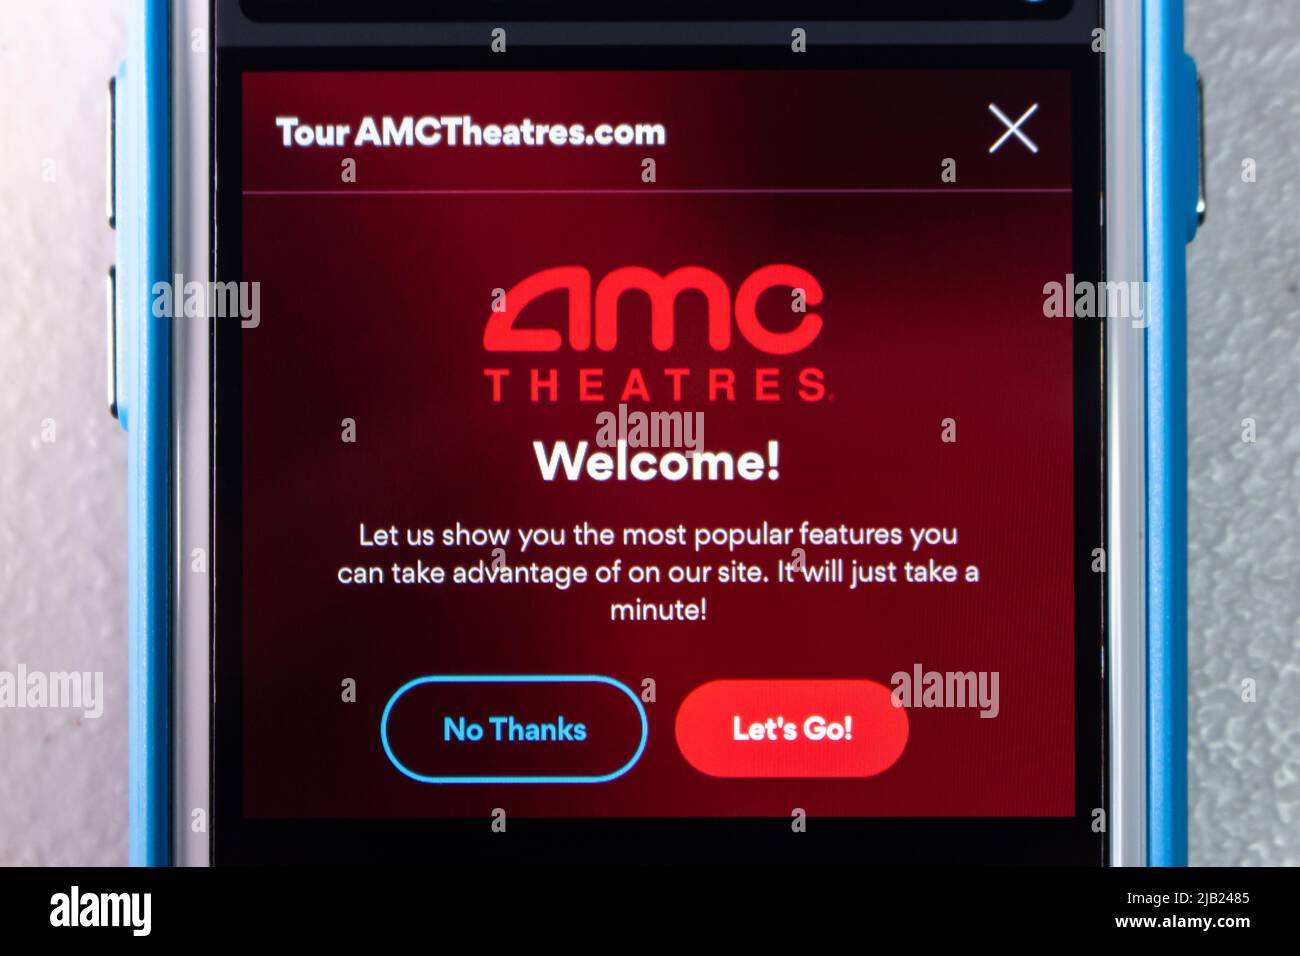 Kumamoto, GIAPPONE - Jan 14 2022 : il sito web di AMC Theaters, una catena di cinema statunitense con sede a Leawood, Kansas, sullo schermo dell'iPhone. Foto Stock